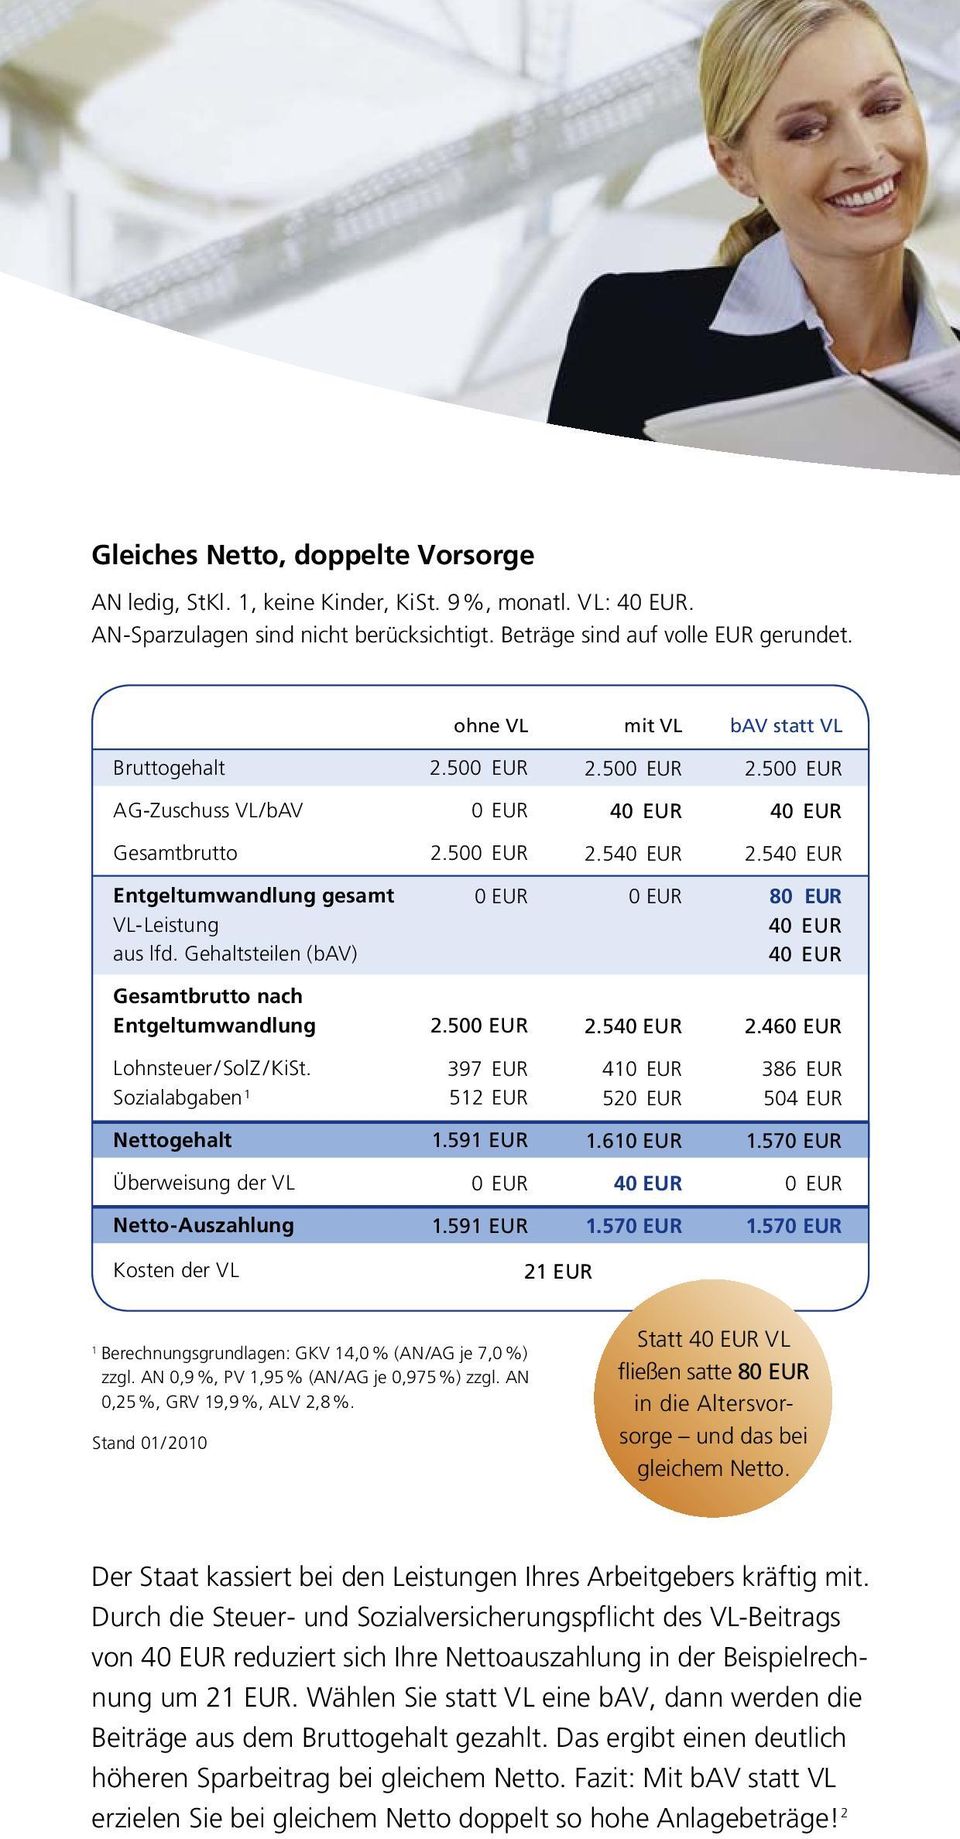 Sozialabgaben 1 397 EUR 512 EUR 41 52 386 EUR 504 EUR Nettogehalt 1.591 EUR 1.61 1.57 Überweisung der V L Netto - Auszahlung 1.591 EUR 1.57 1.